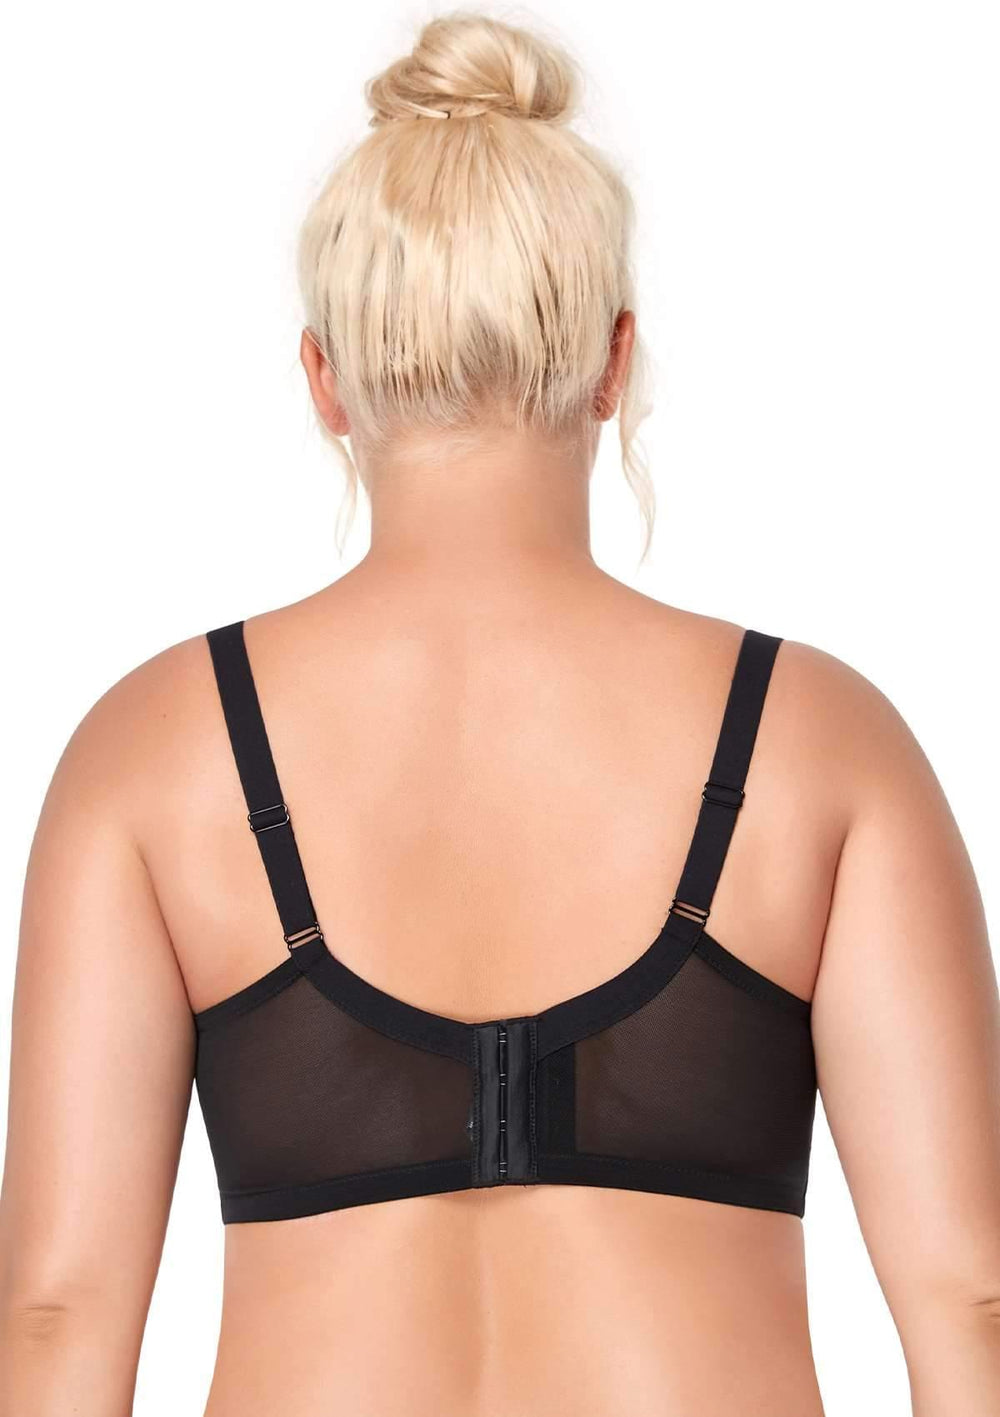 Buy Sonari Zoya Women's Regular Bra - Black (34D) Online